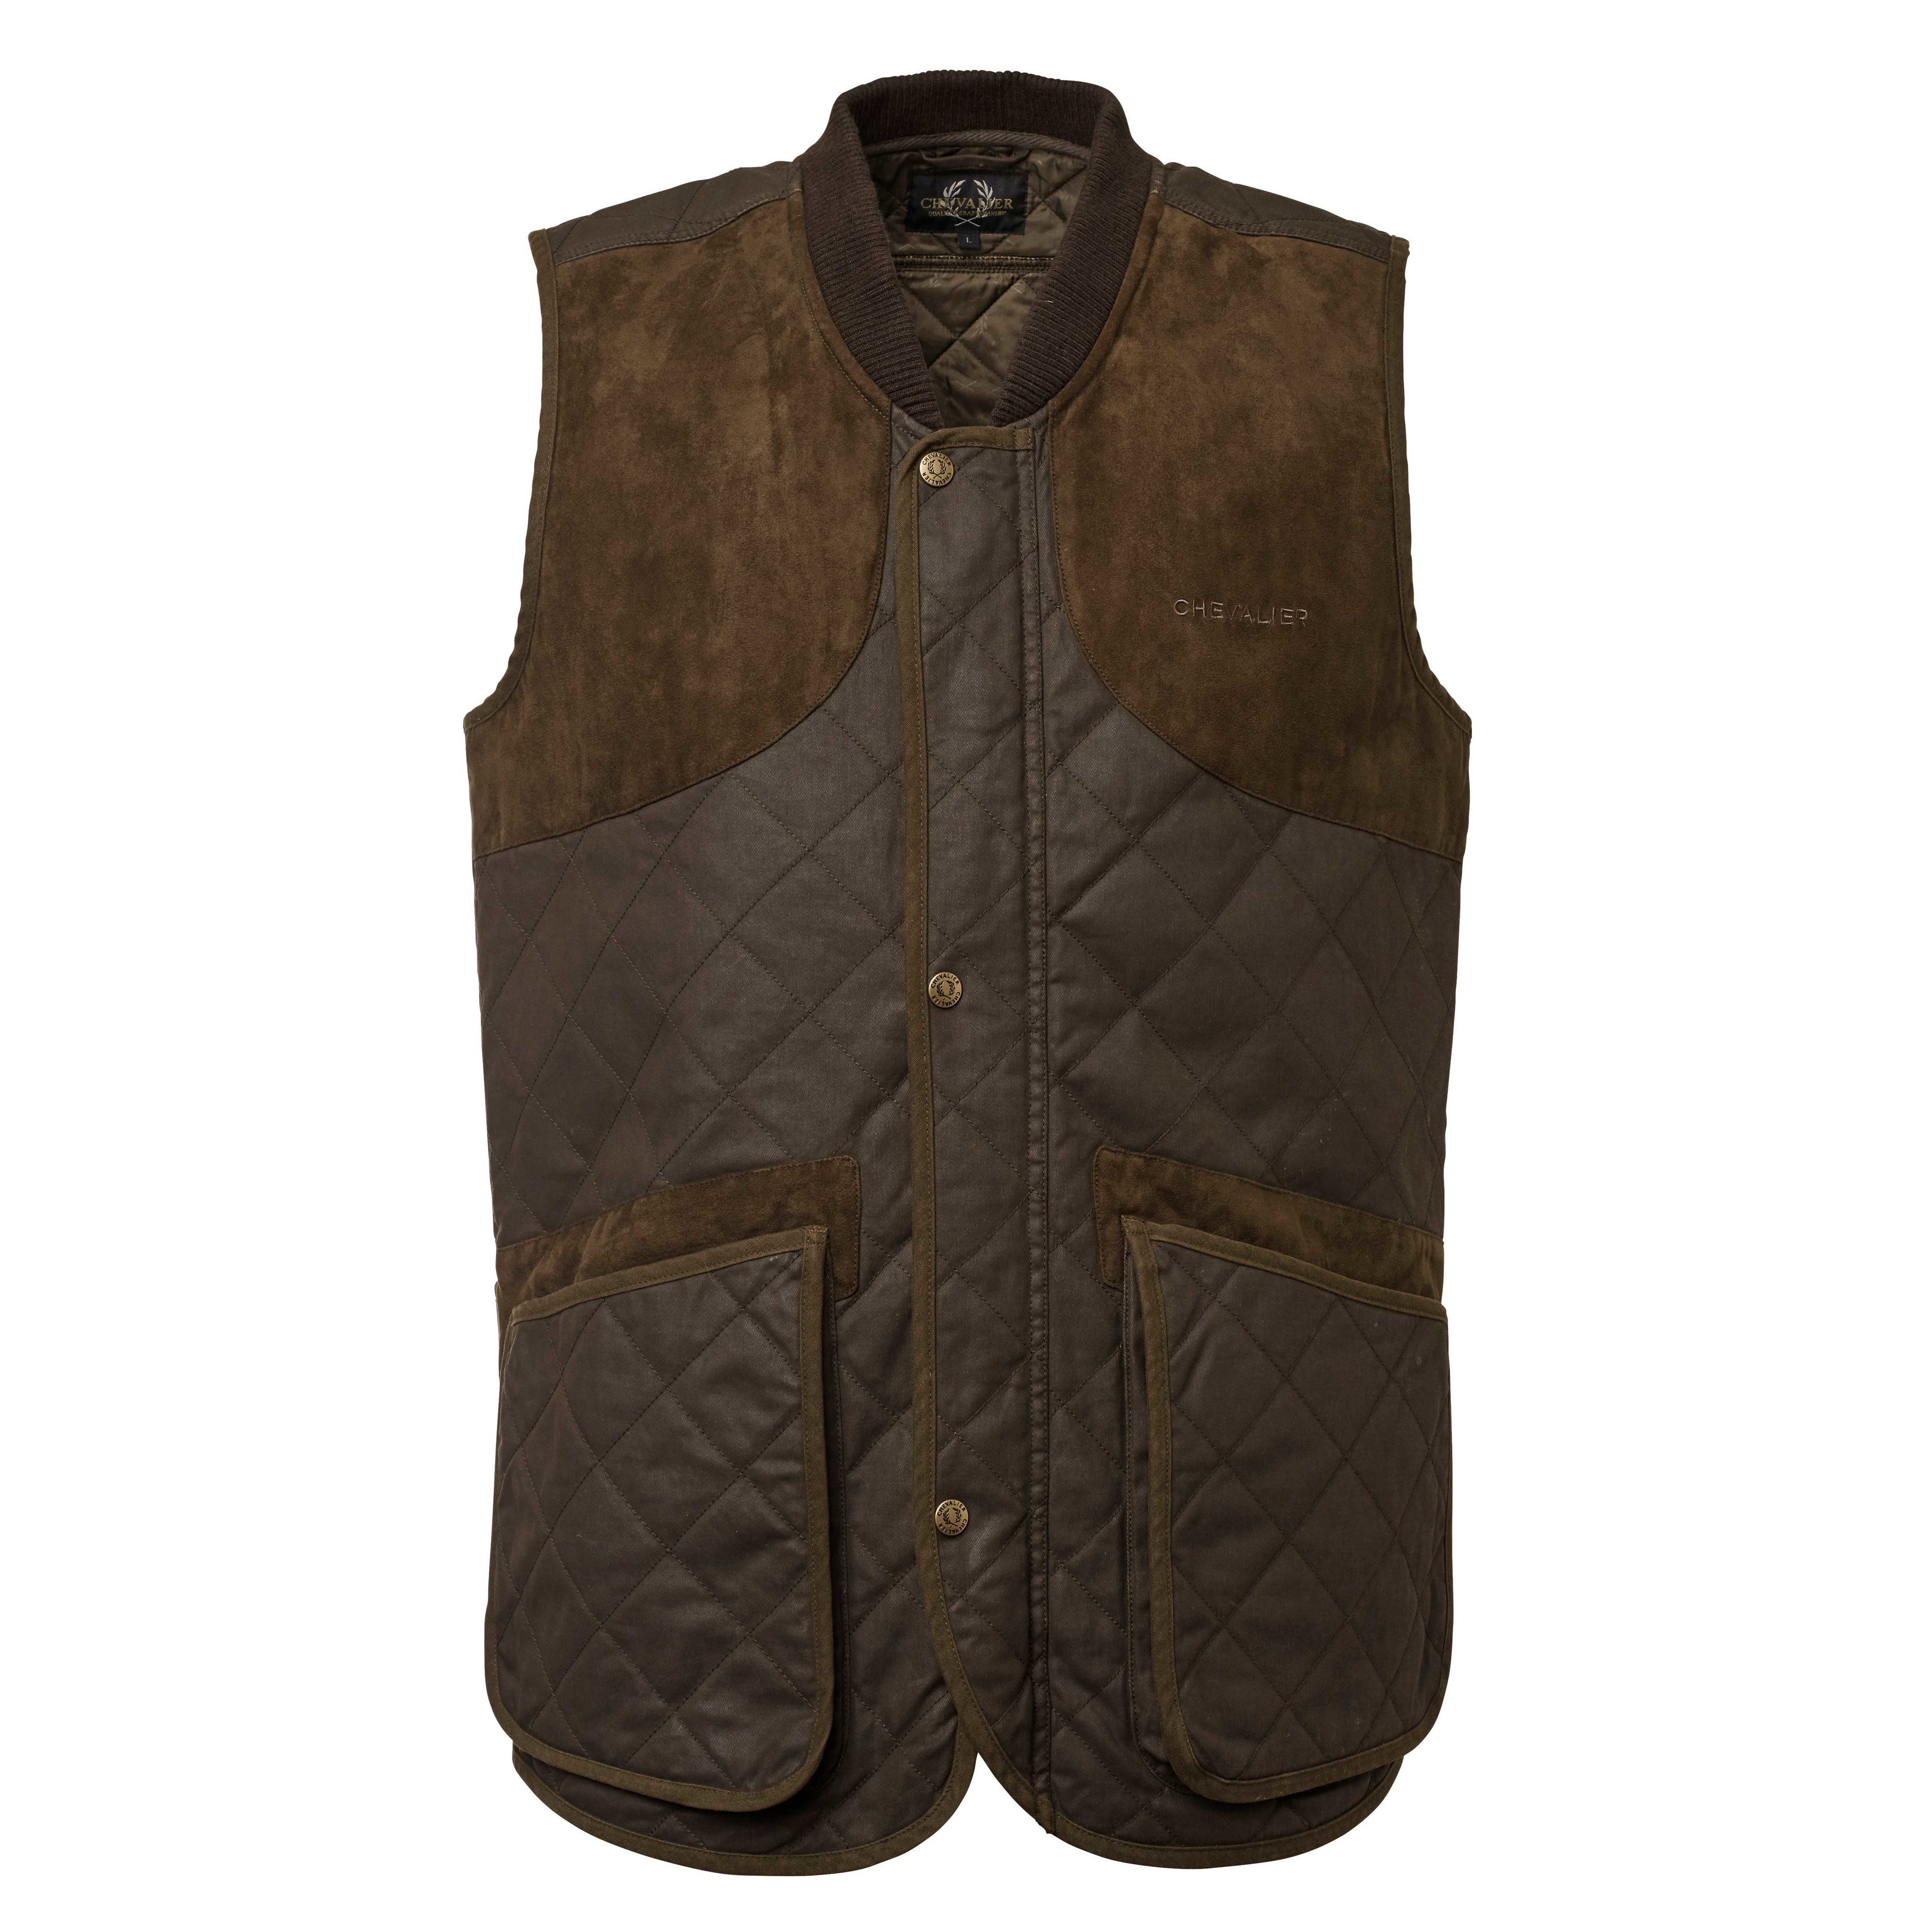 Men's Vintage Shooting Vest Leather Brown